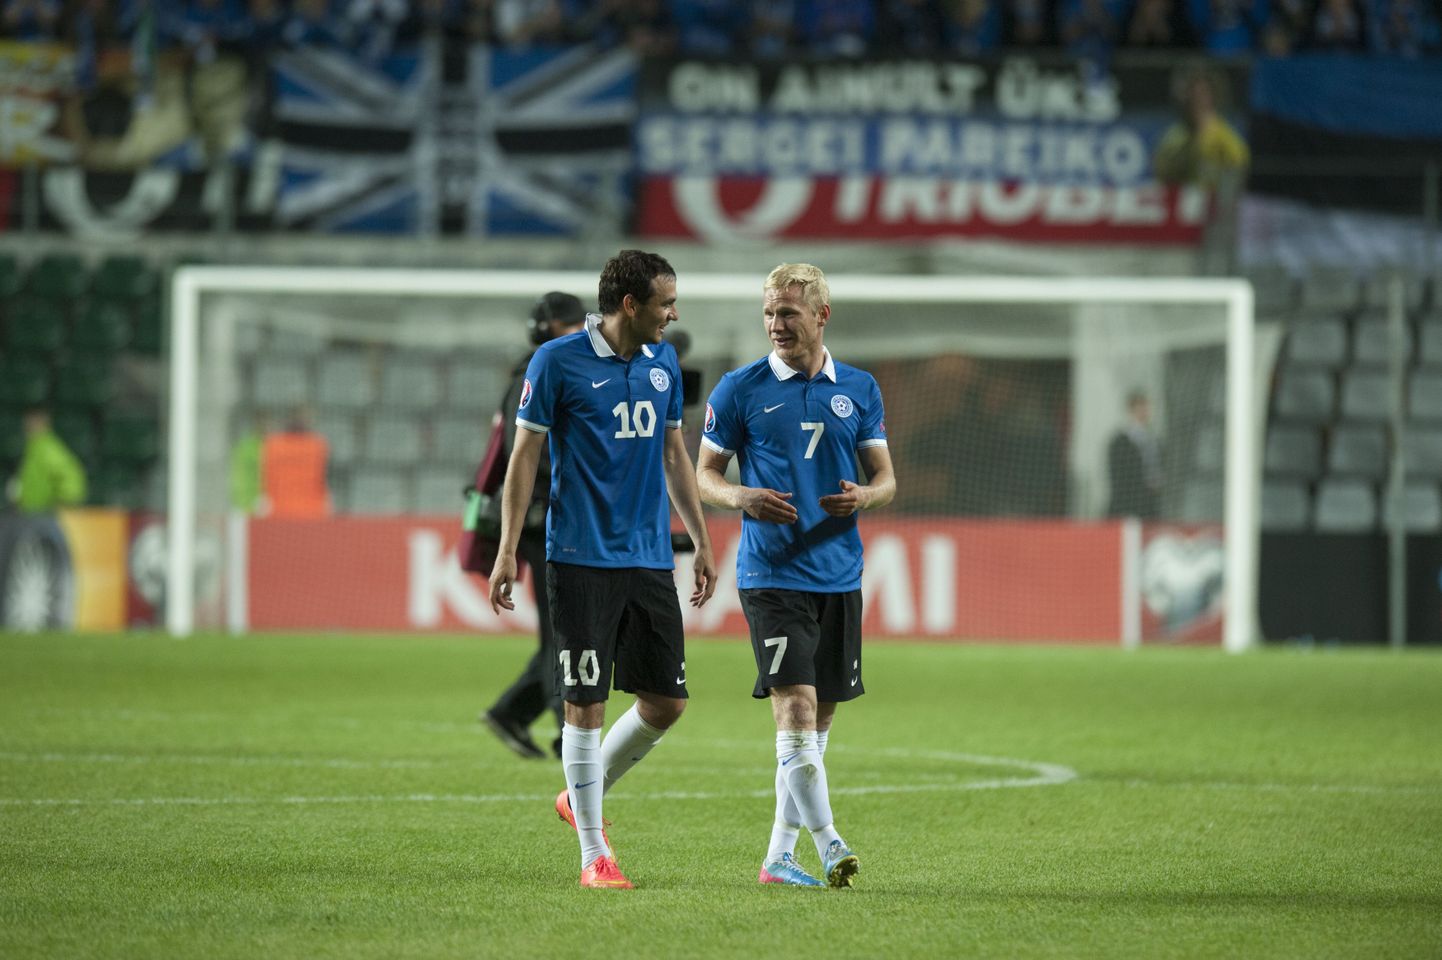 Eesti võitis EM-valikturniiri avamängus 1:0 Sloveeniat. Mängu ainsa värava lõi Ats Purje 86. minutil.